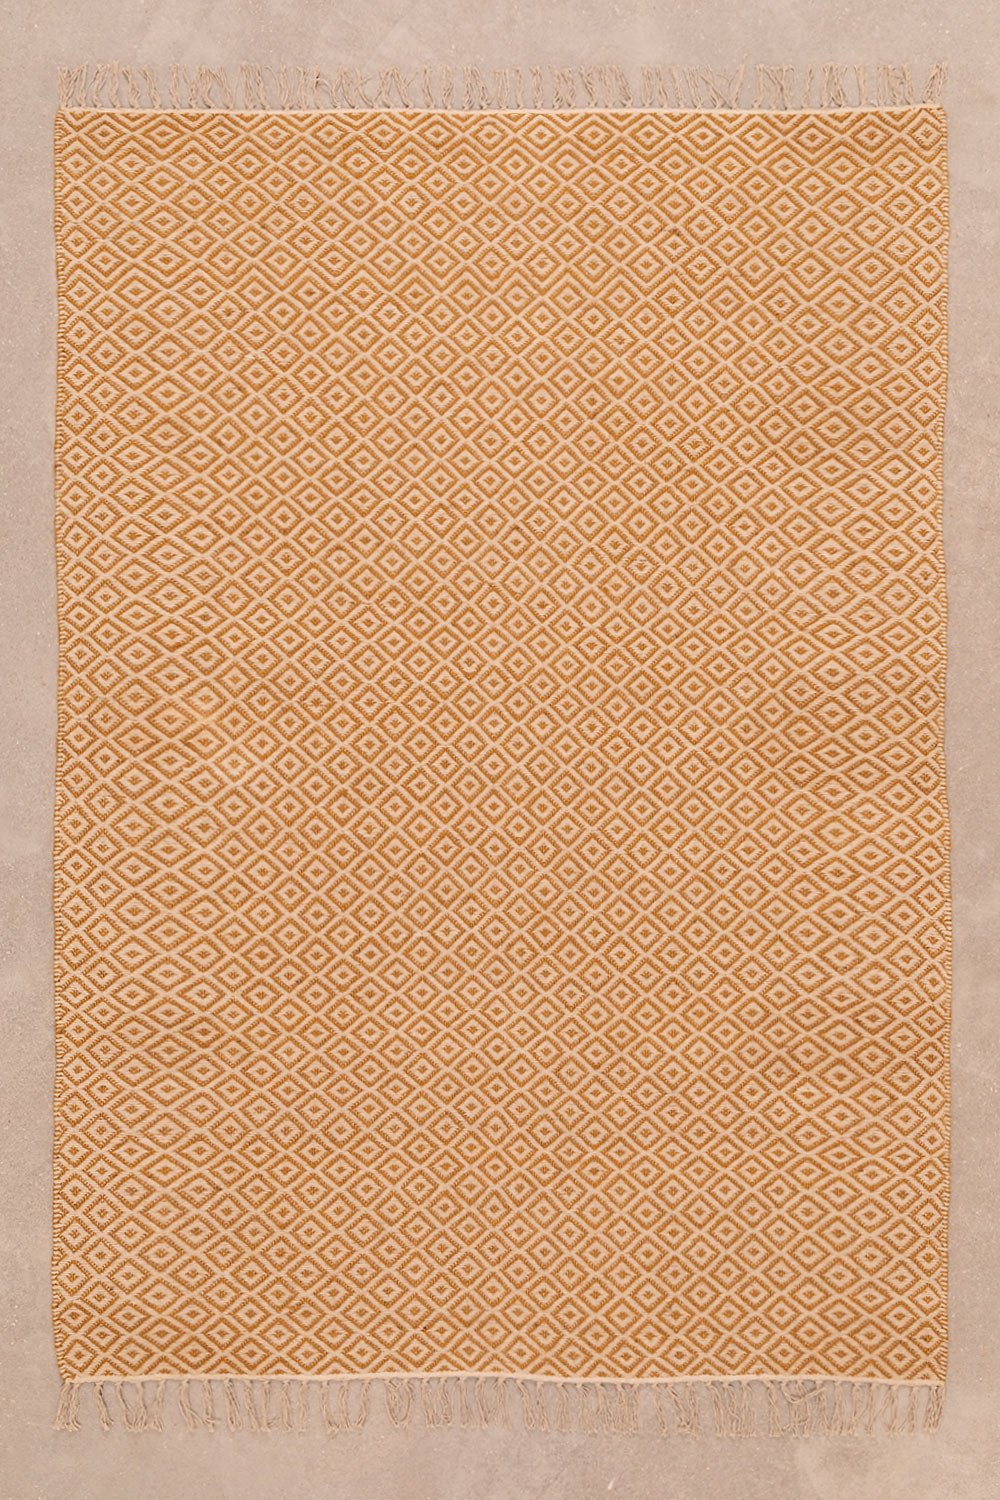 Vloerkleed van katoen en jute (177x122 cm) Durat, galerij beeld 1